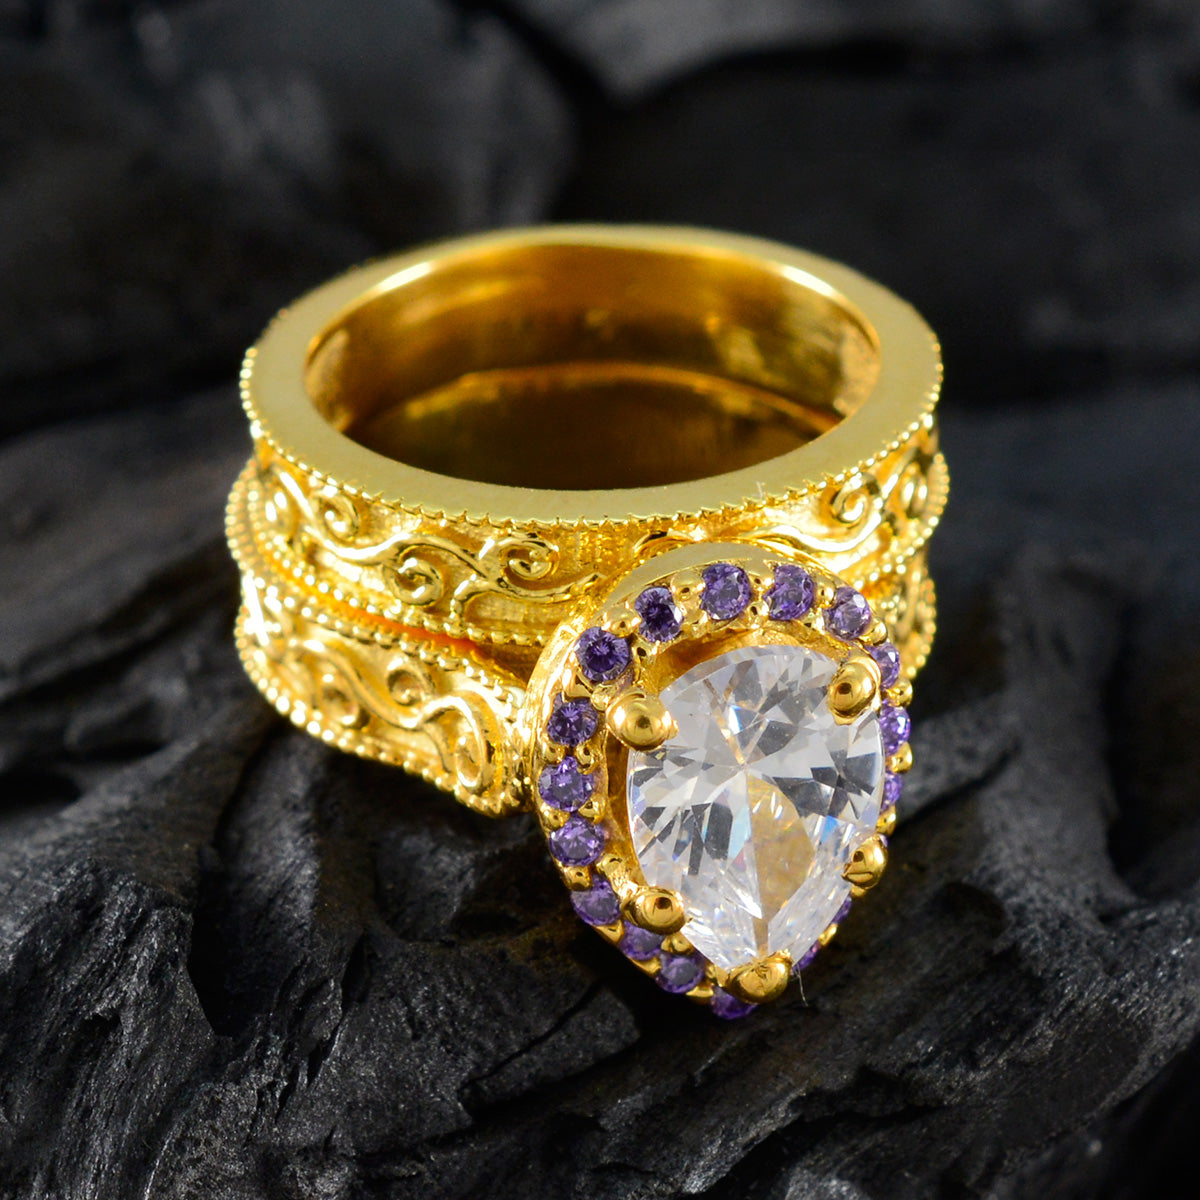 riyo eccellente anello in argento con placcatura in oro giallo, pietra di ametista, punta a forma di pera, elegante anello di compleanno per gioielli